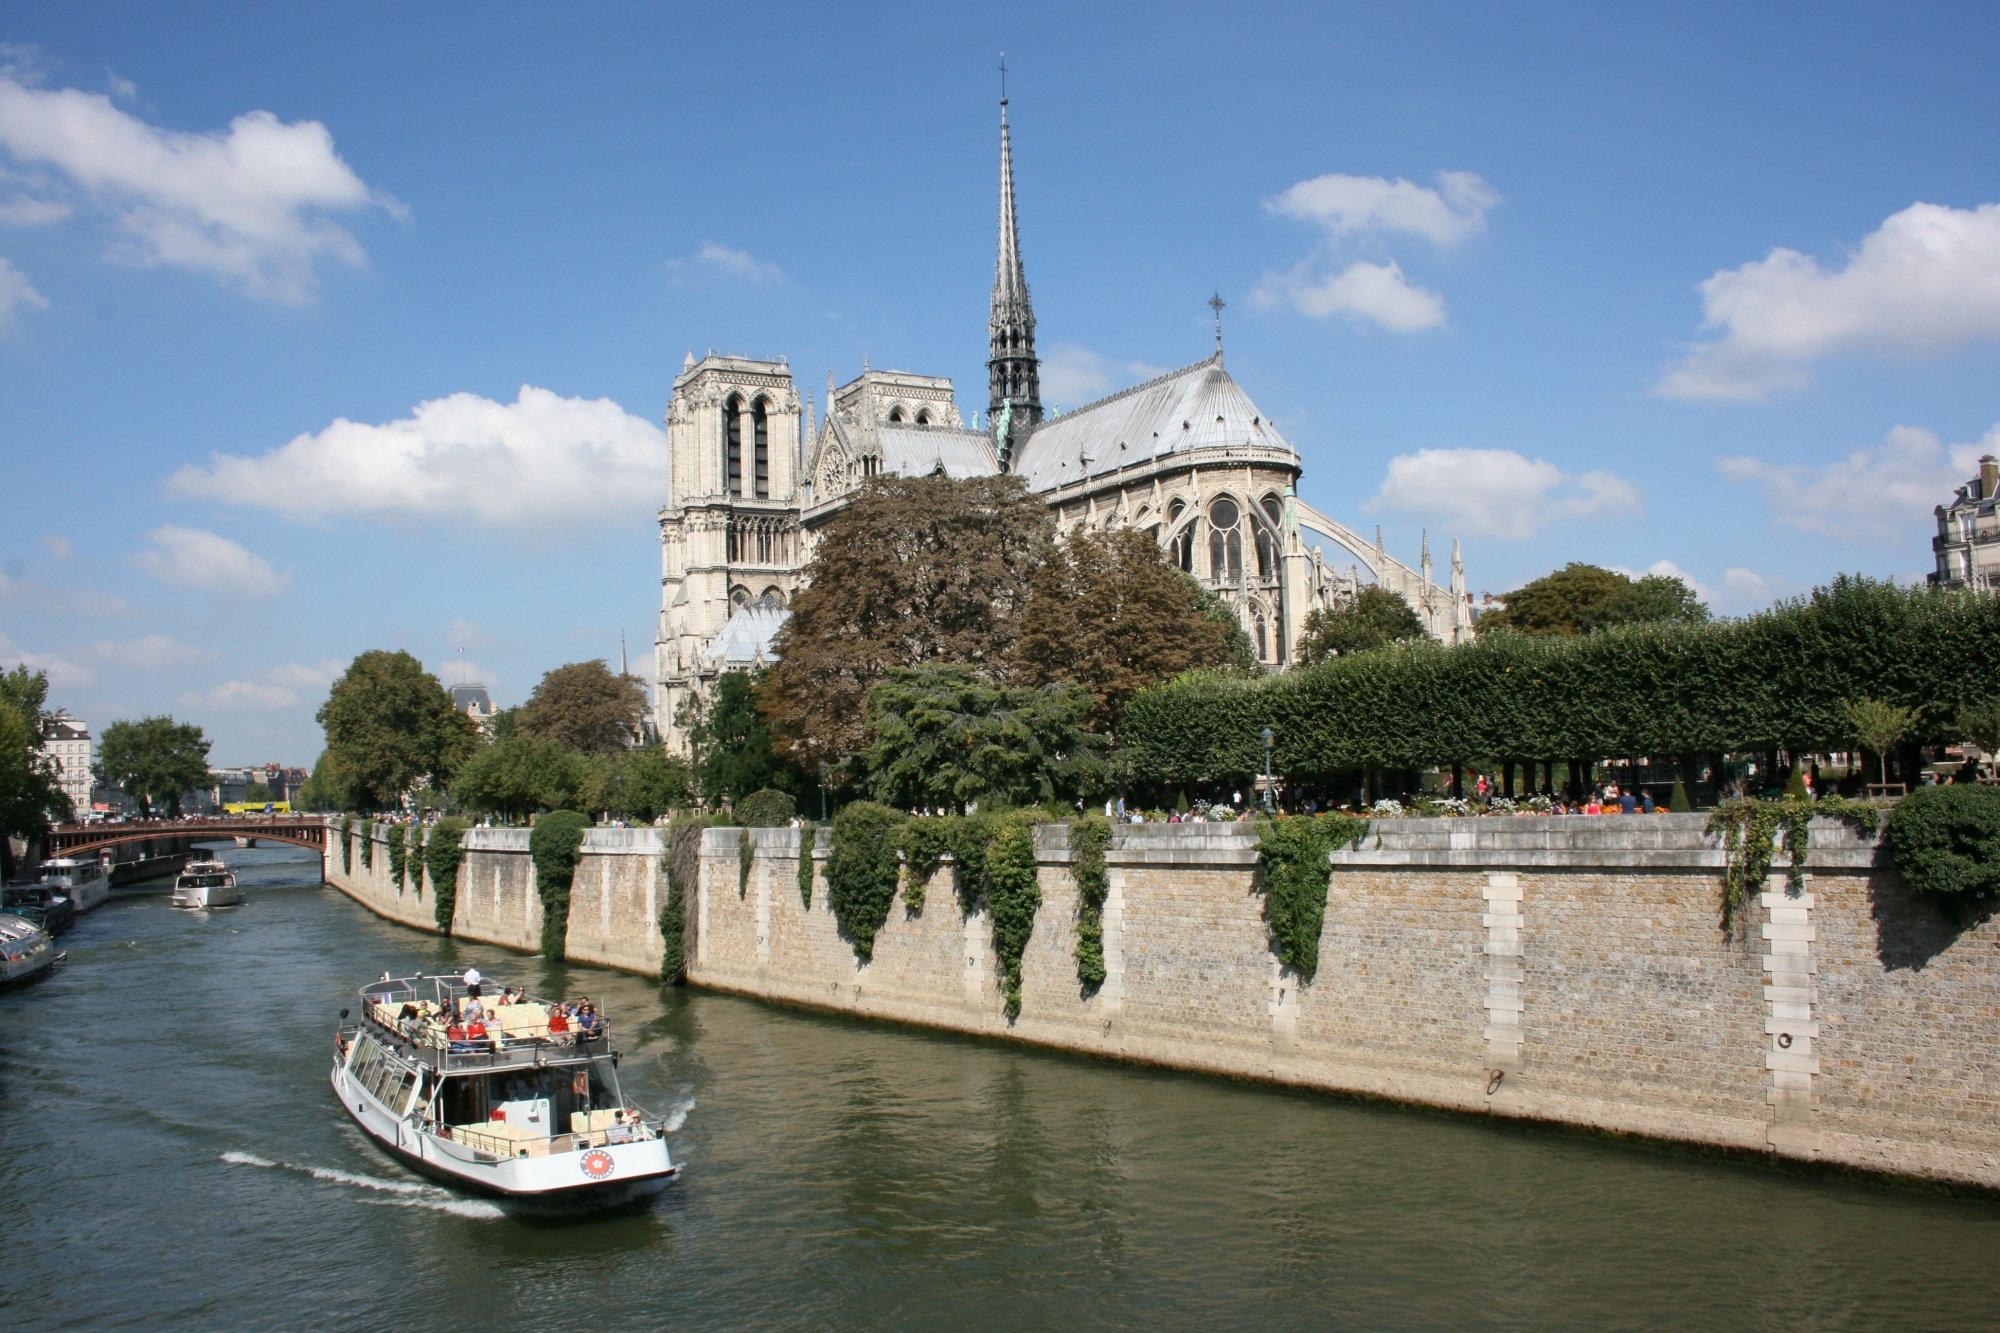 507/Photos_Paris/boat-chateau-palace-paris-river-canal-929085-pxhere_com.jpg